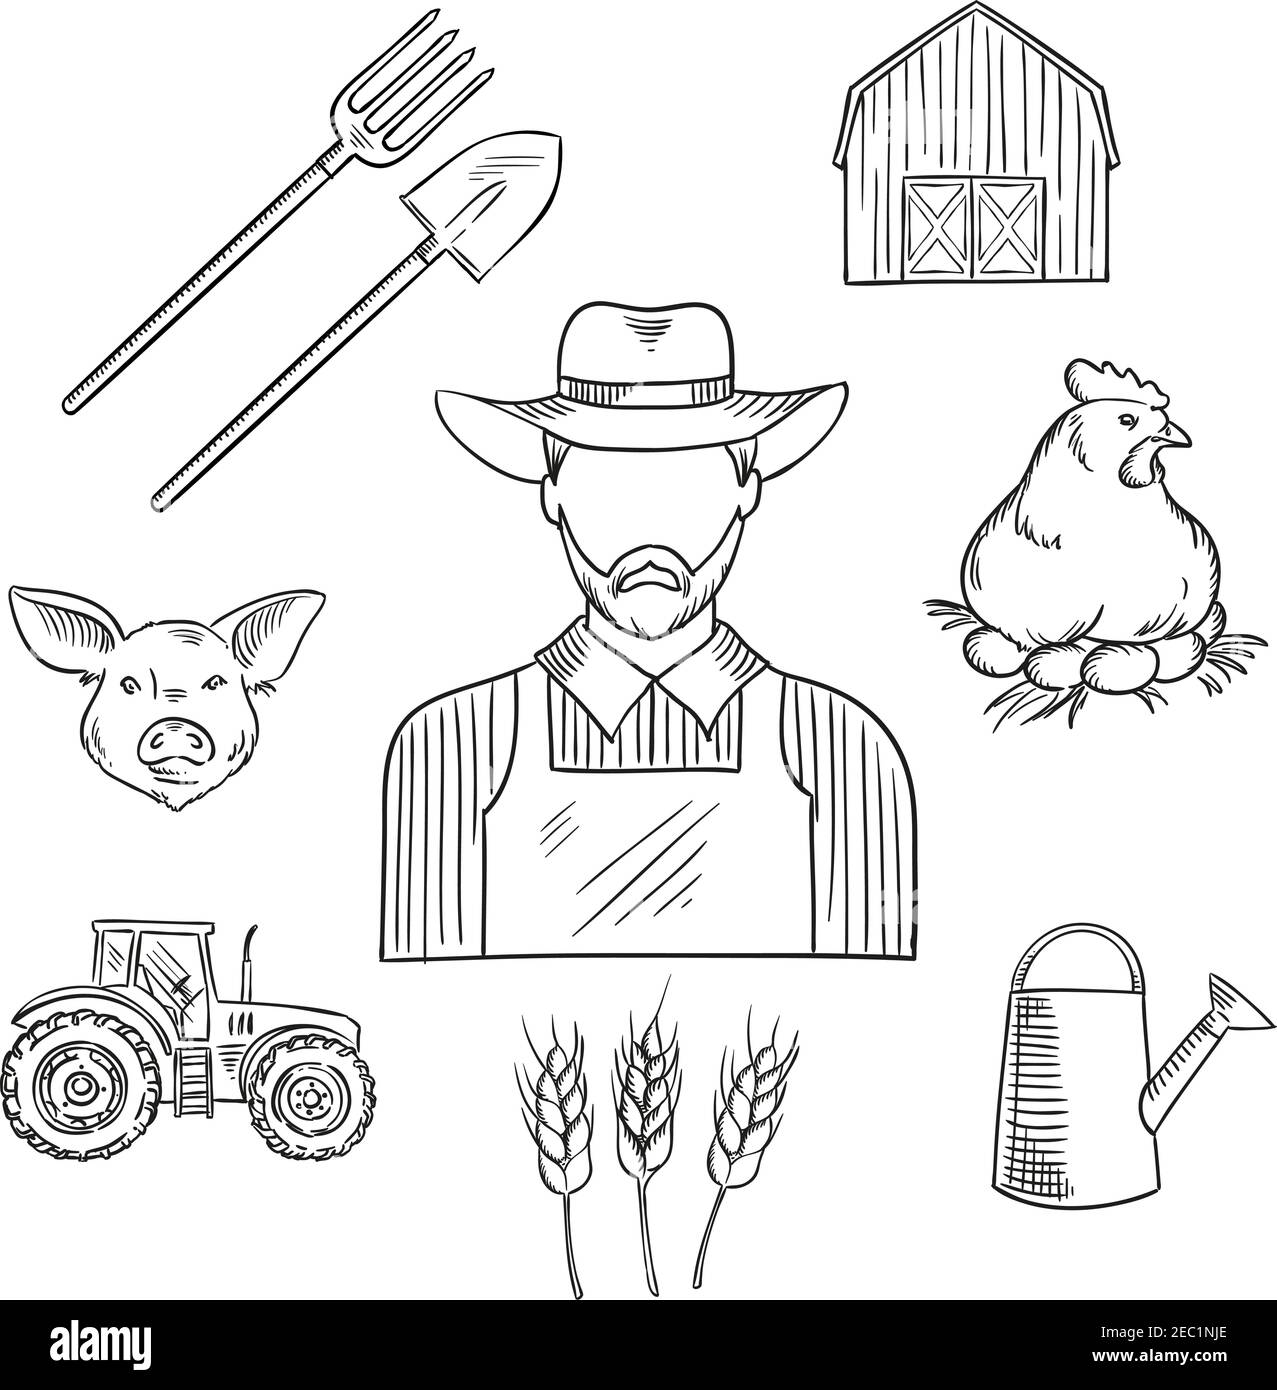 Dessin de la profession d'agriculteur pour la conception agricole avec un  homme barbu dans un chapeau et une combinaison, encerclés par un tracteur,  une grange, des plantations de blé, une bêche, une